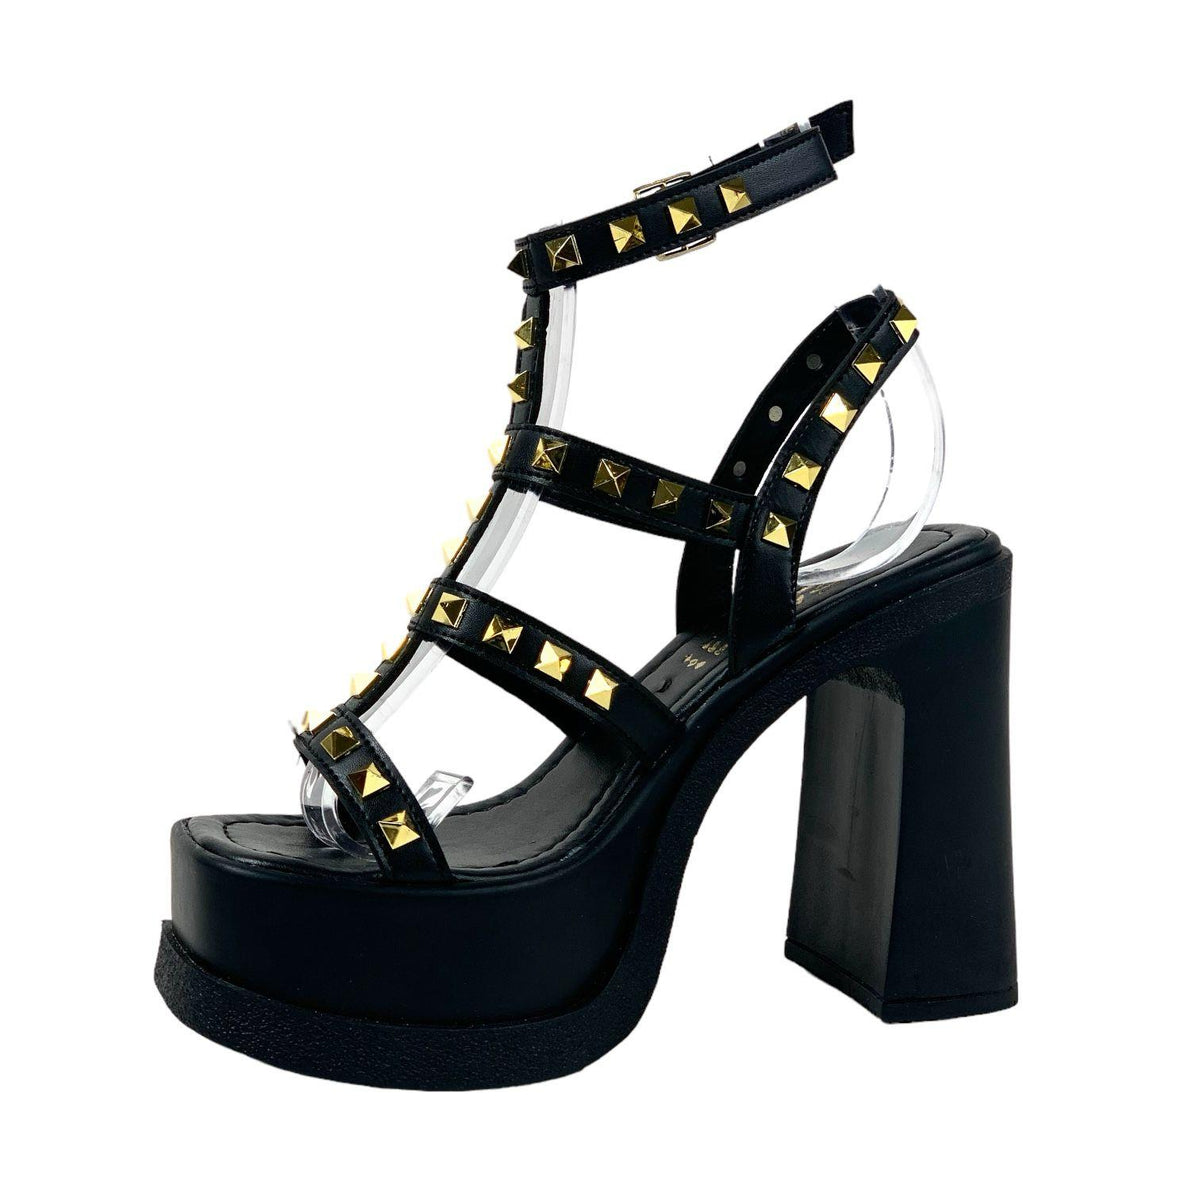 Women's Bonke Black Stone Gladiator Sandals 15 cm Heel - STREETMODE™